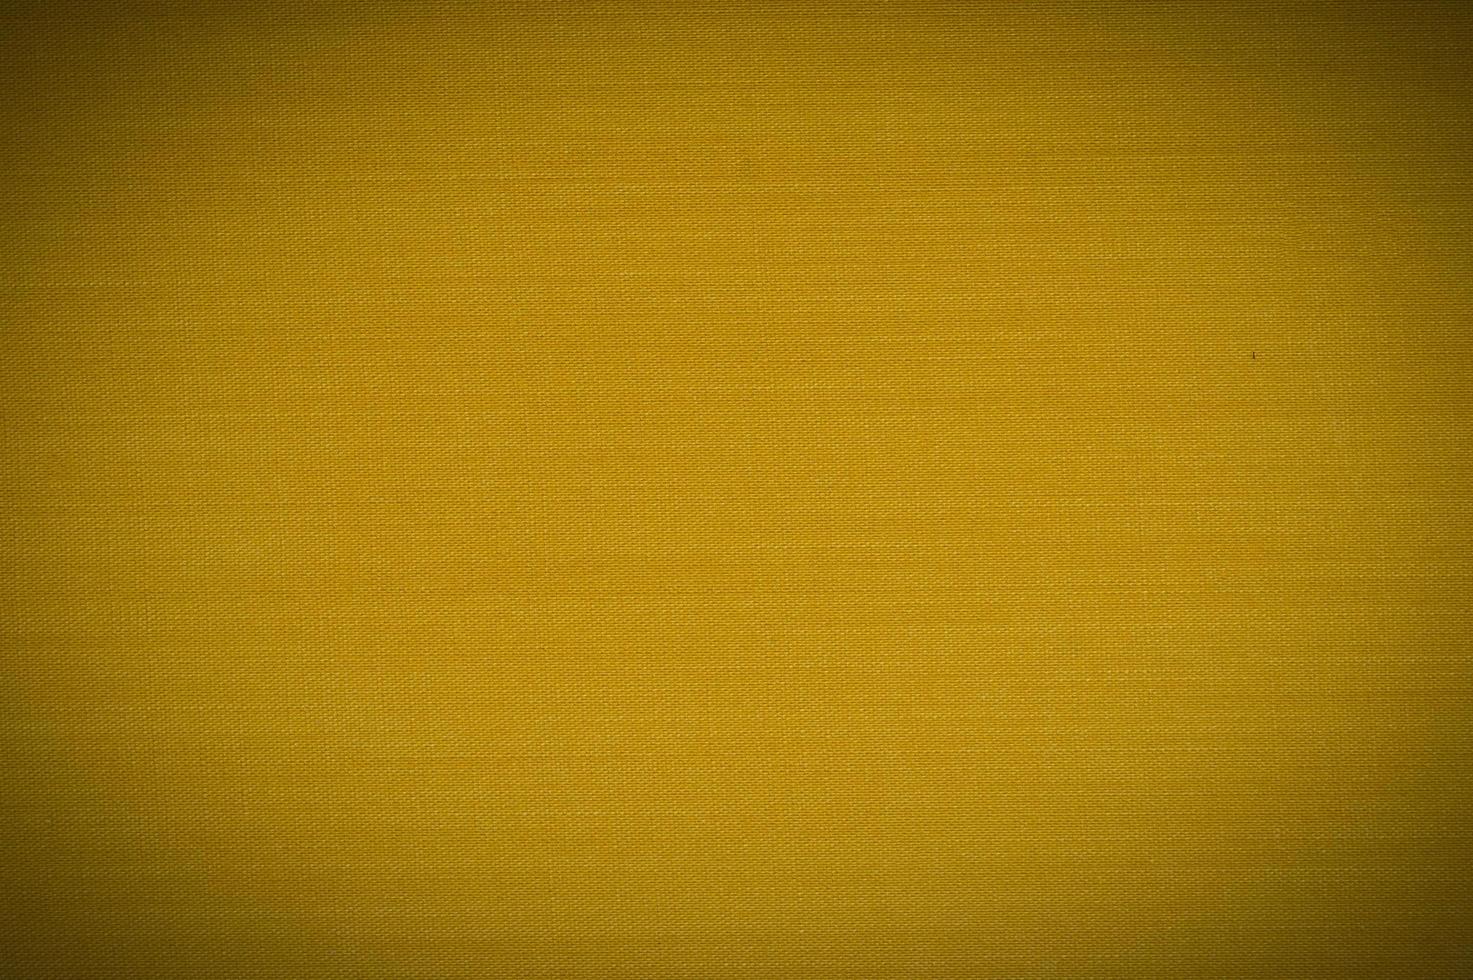 buchumschlag leinwand strukturierter gelber hintergrund foto